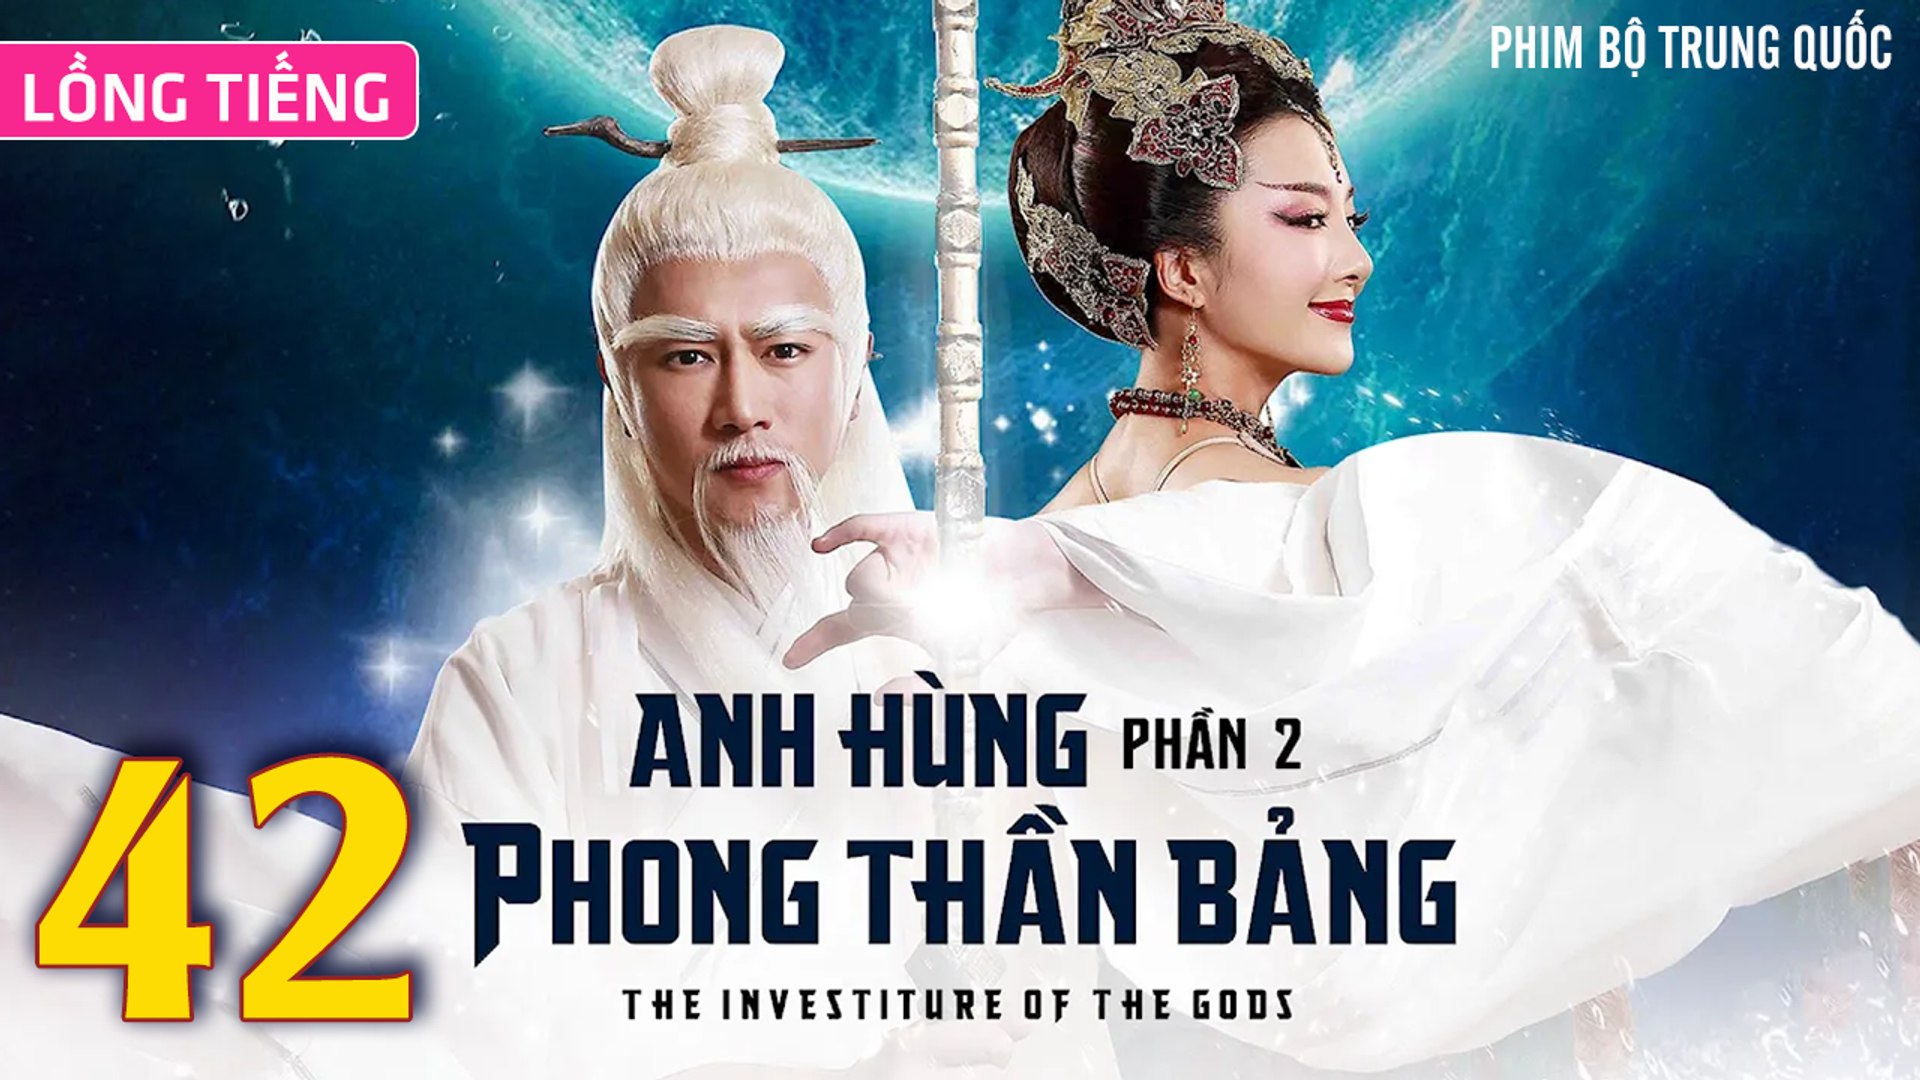 ⁣Phim Bộ Hay: ANH HÙNG PHONG THẦN BẢNG 2 - Tập 42 (Lồng Tiếng) | Phim Bộ Trung Quốc Hay Nhất 2023